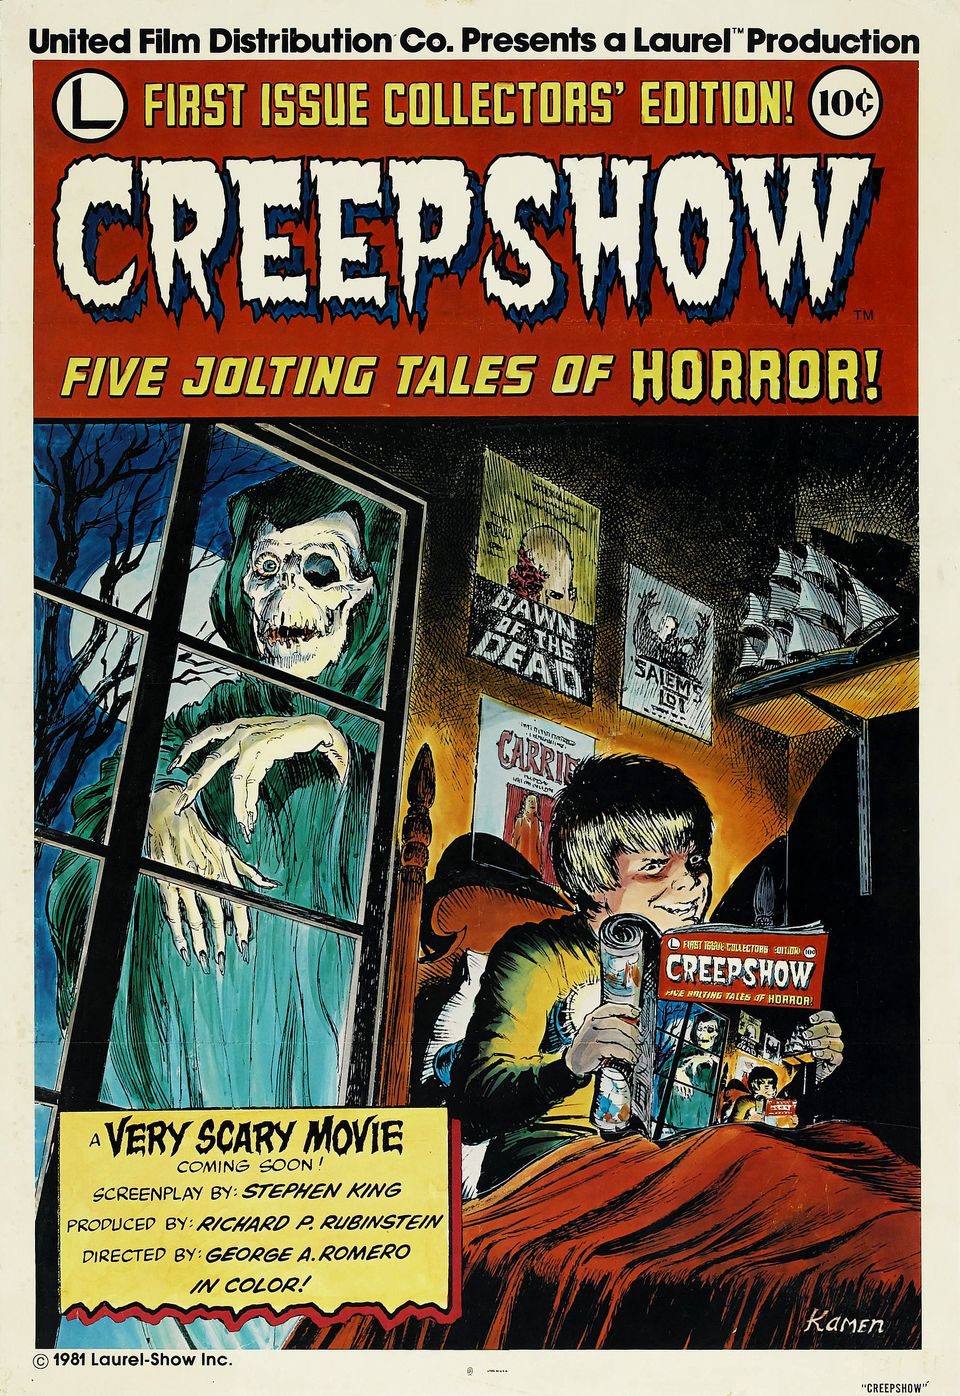 Cartel de Creepshow - Estados Unidos